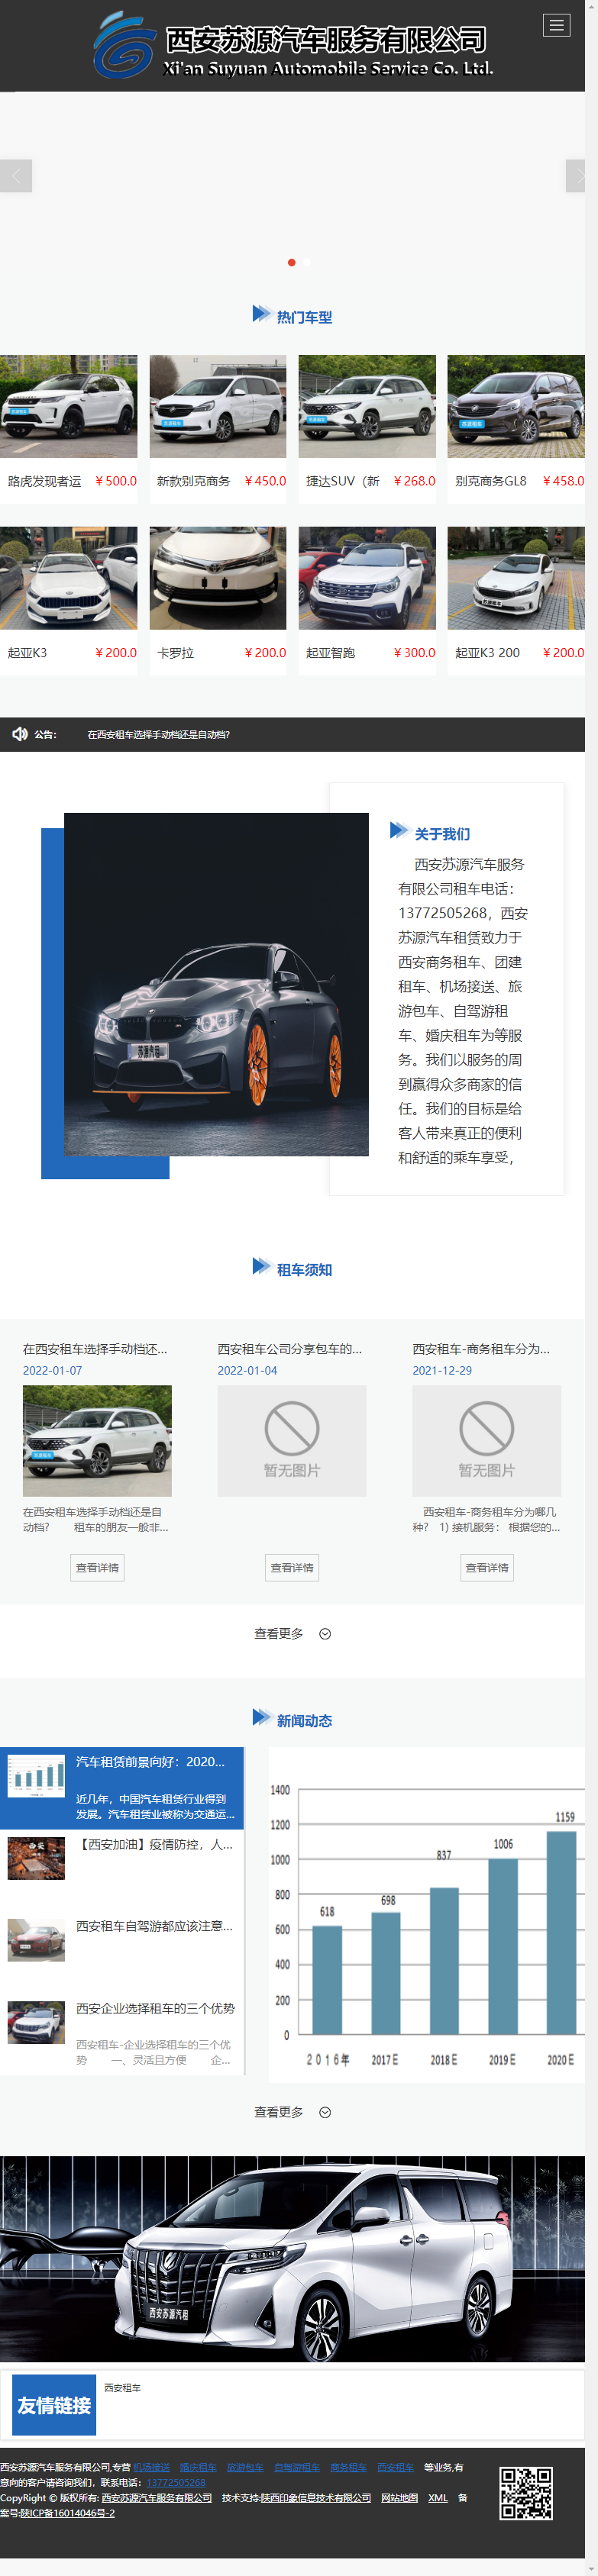 西安苏源汽车服务有限公司网站案例